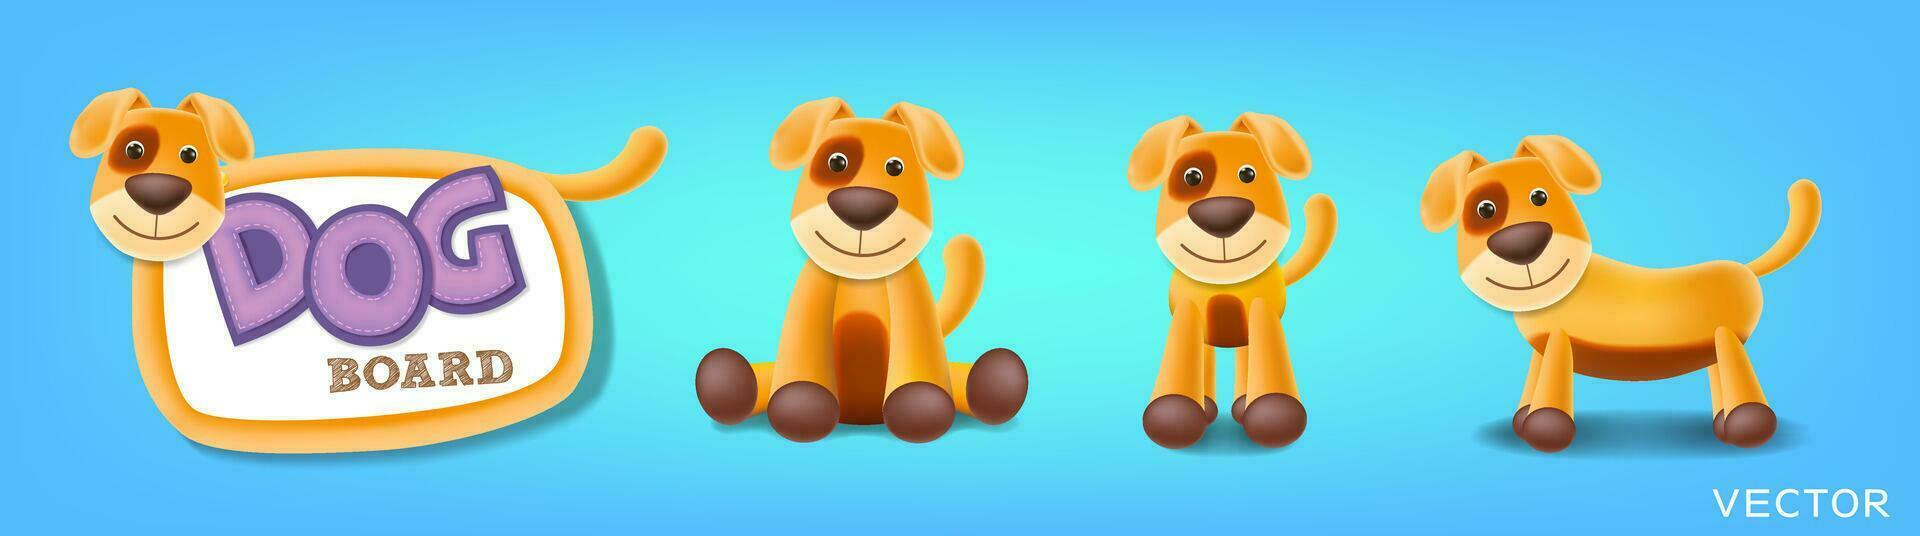 hond bord set, hond schoolbord, staan, zittend en verschillend poses vector illustratie